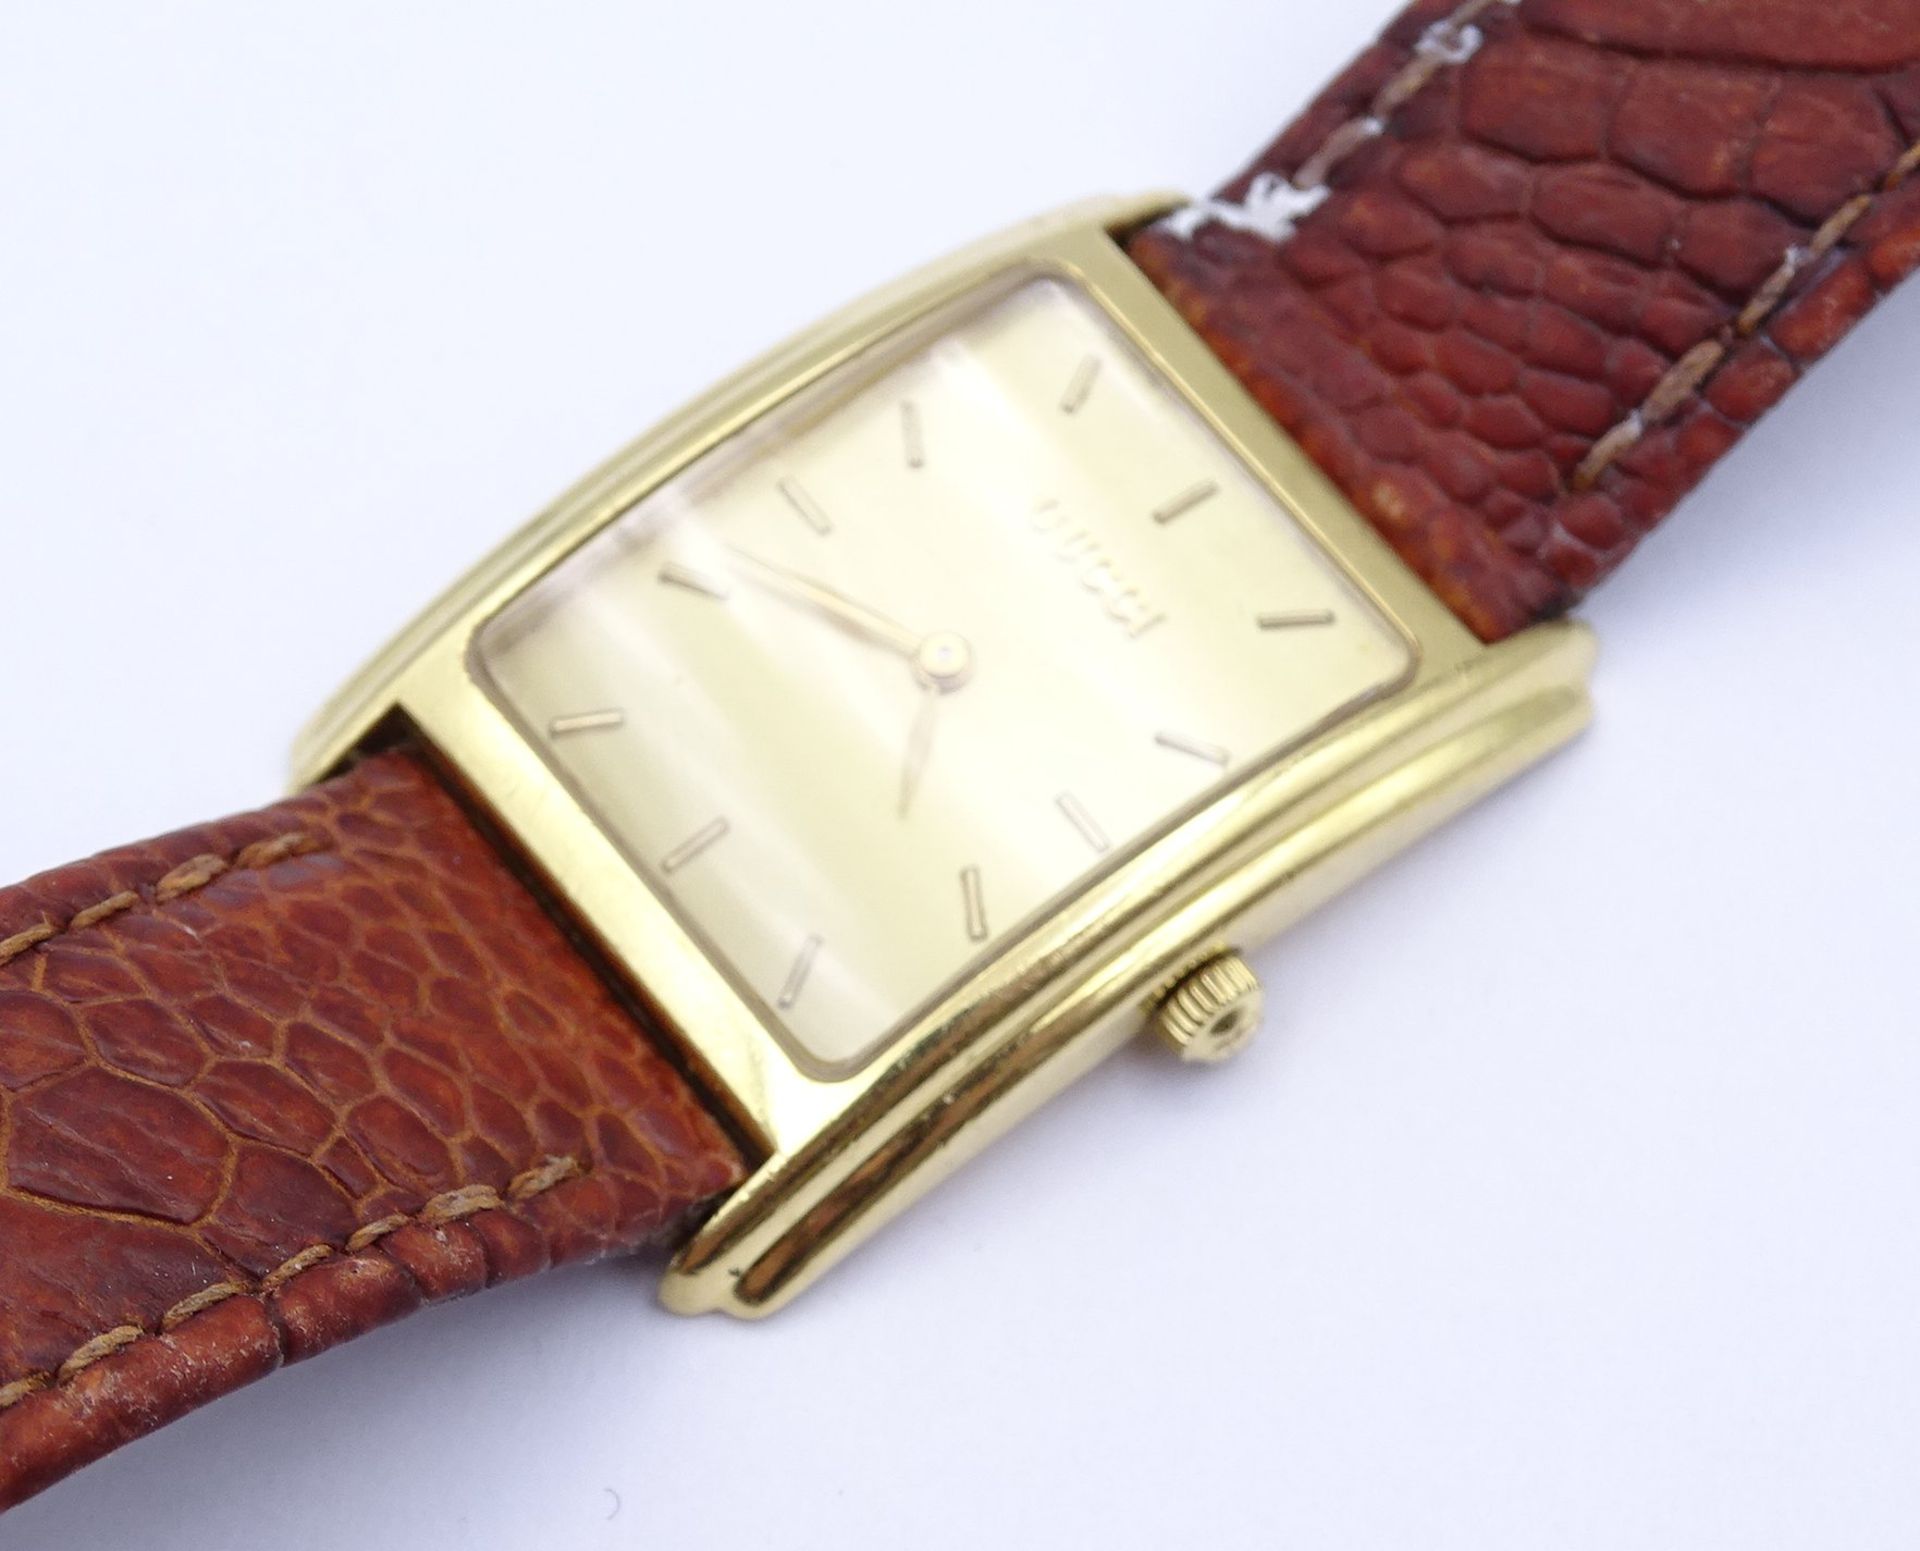 Damen Armbanduhr Gucci, 750er GG Gehäuse, 27x24mm, Quartzwerk, Funktion nicht überprüft - Bild 5 aus 8